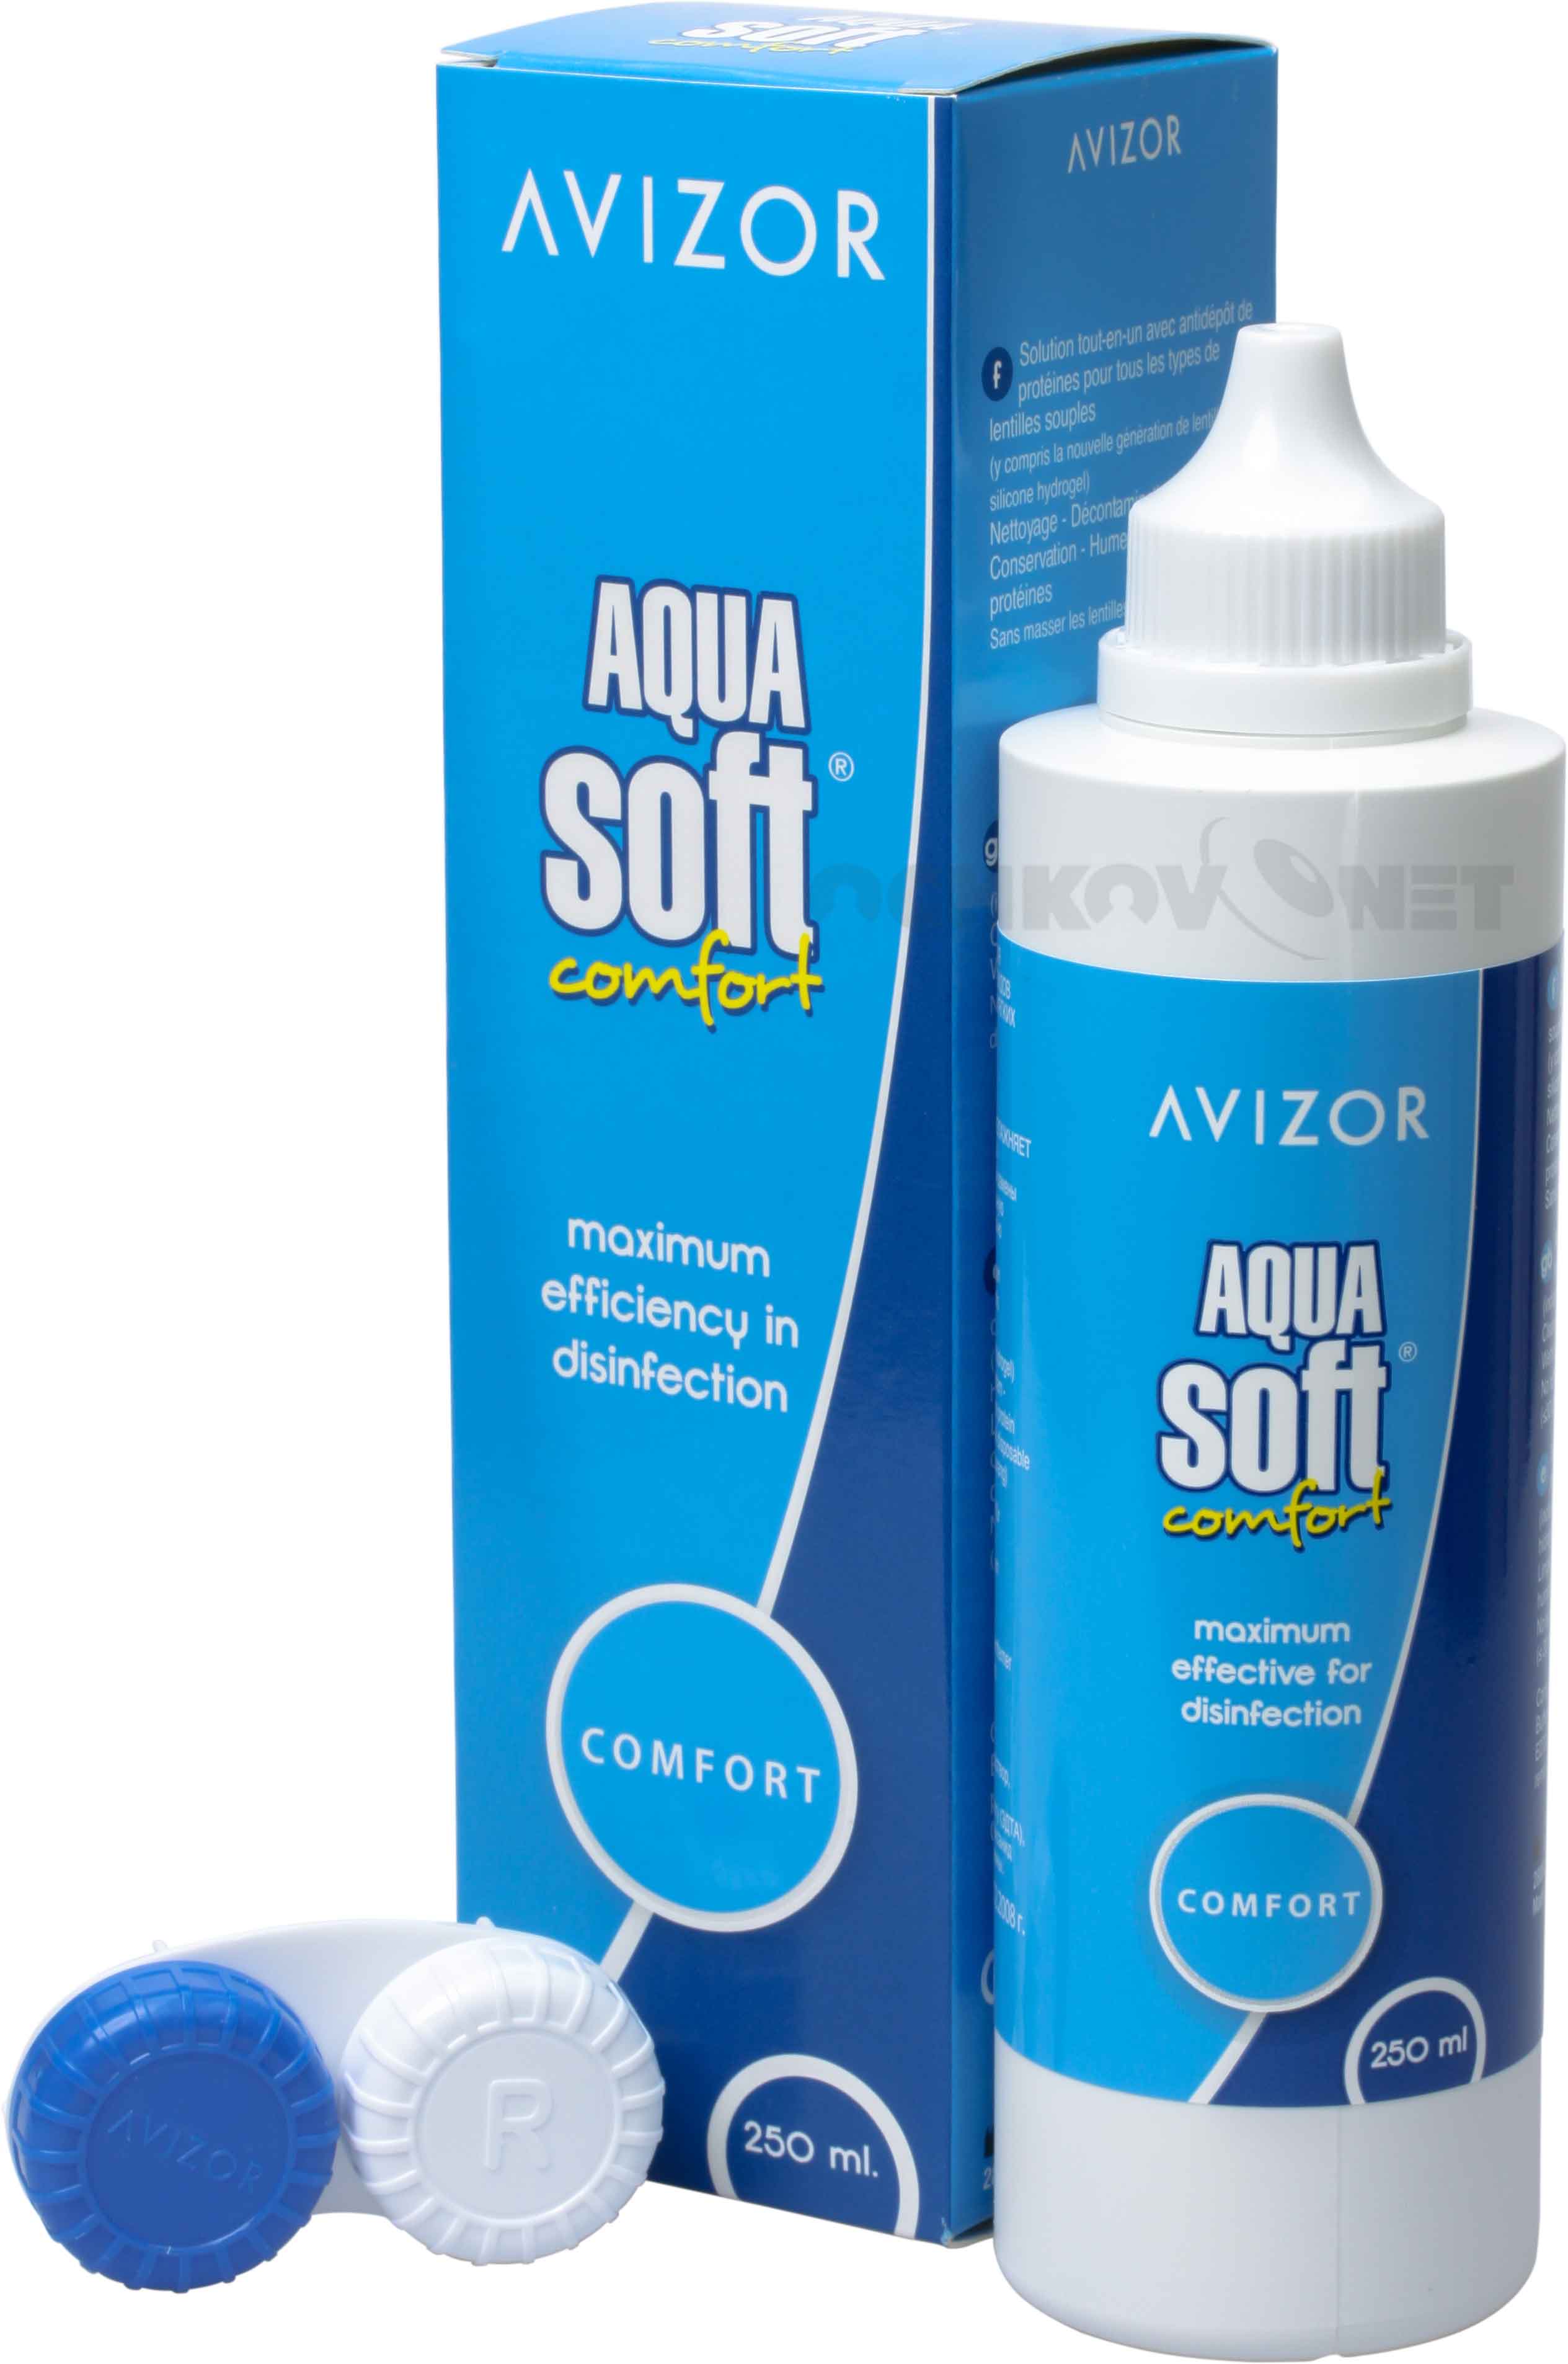 Раствор Aqua Soft Comfort+ 250 мл + контейнер, Avizor International  - купить со скидкой